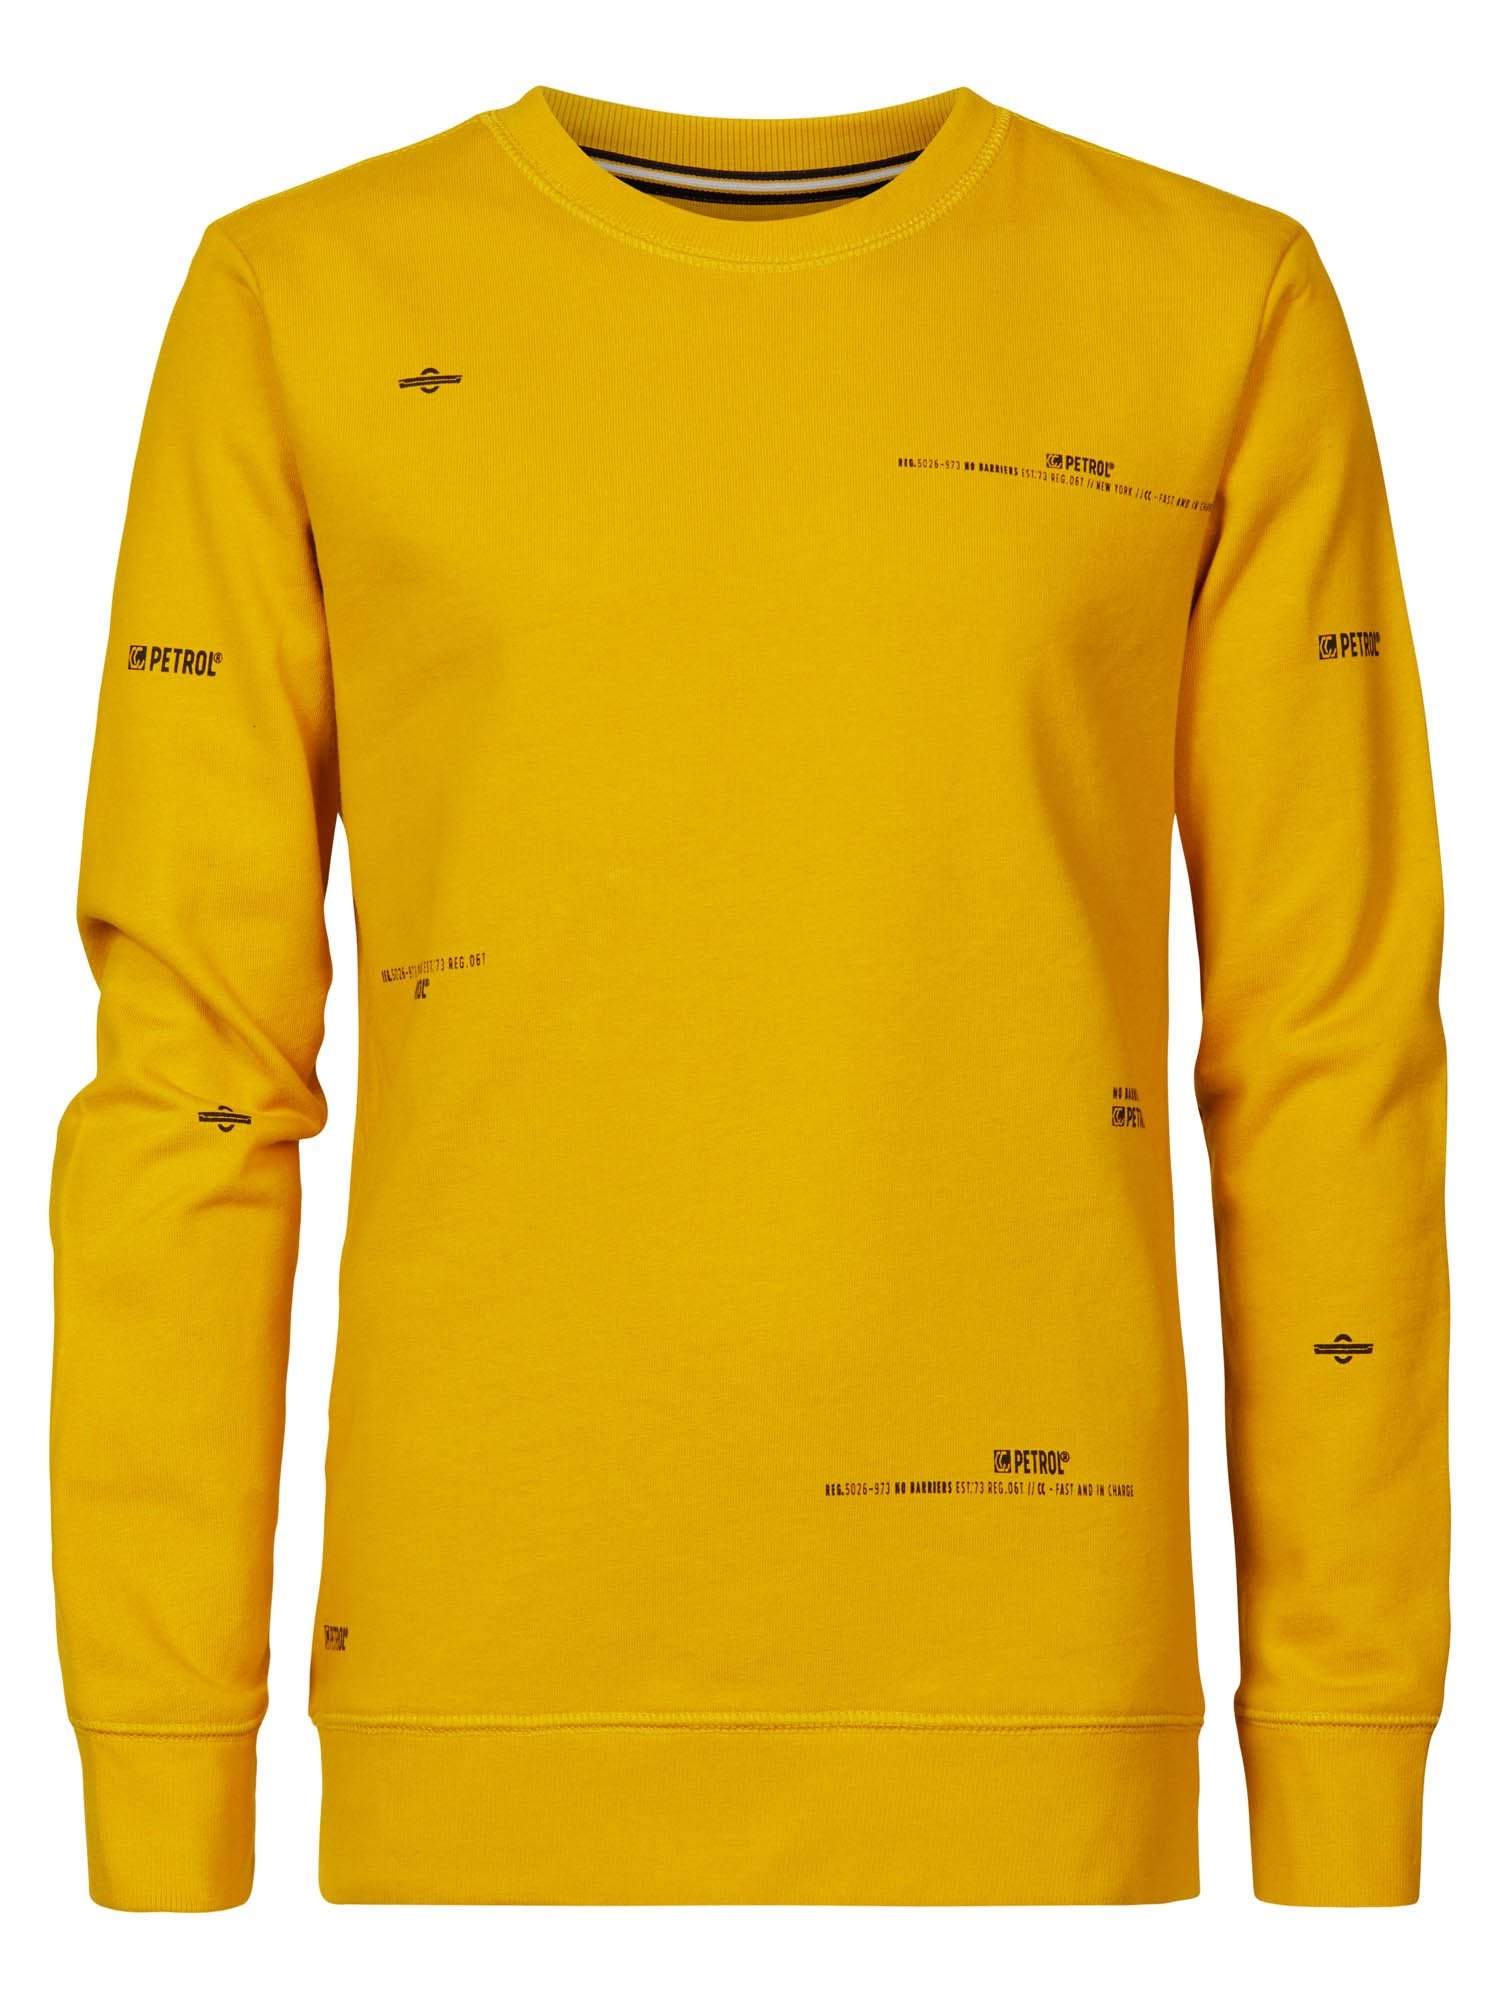 Jongens Sweater Crewneck with Small Text van Petrol in de kleur Antique Yellow in maat 164.